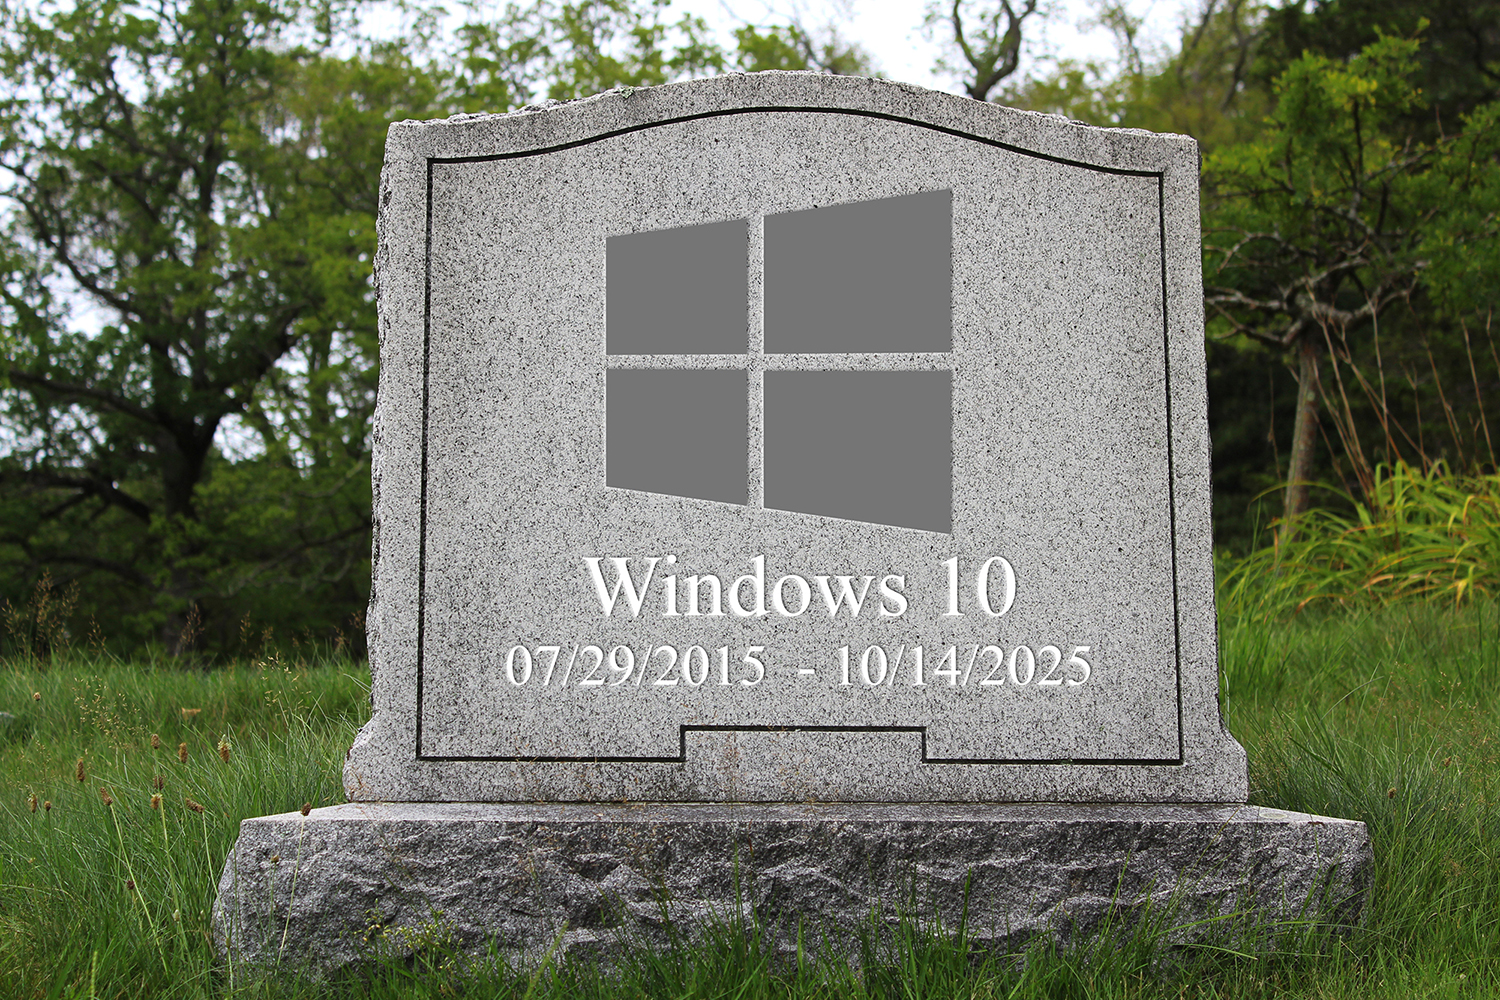 Windows 2